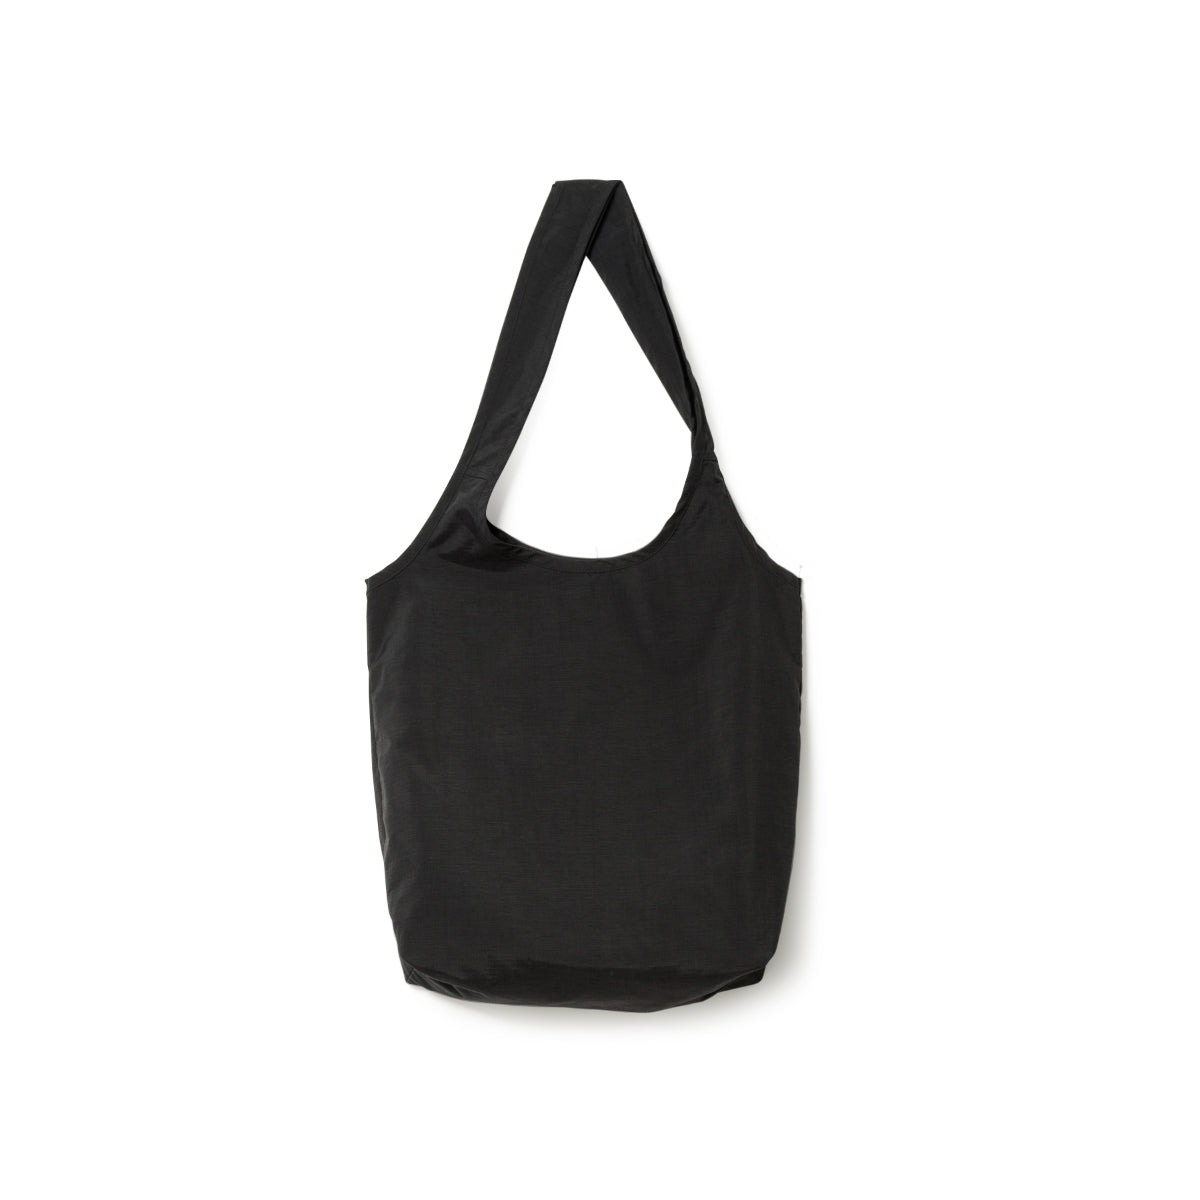 Supplex(R) Nylon Market Bag